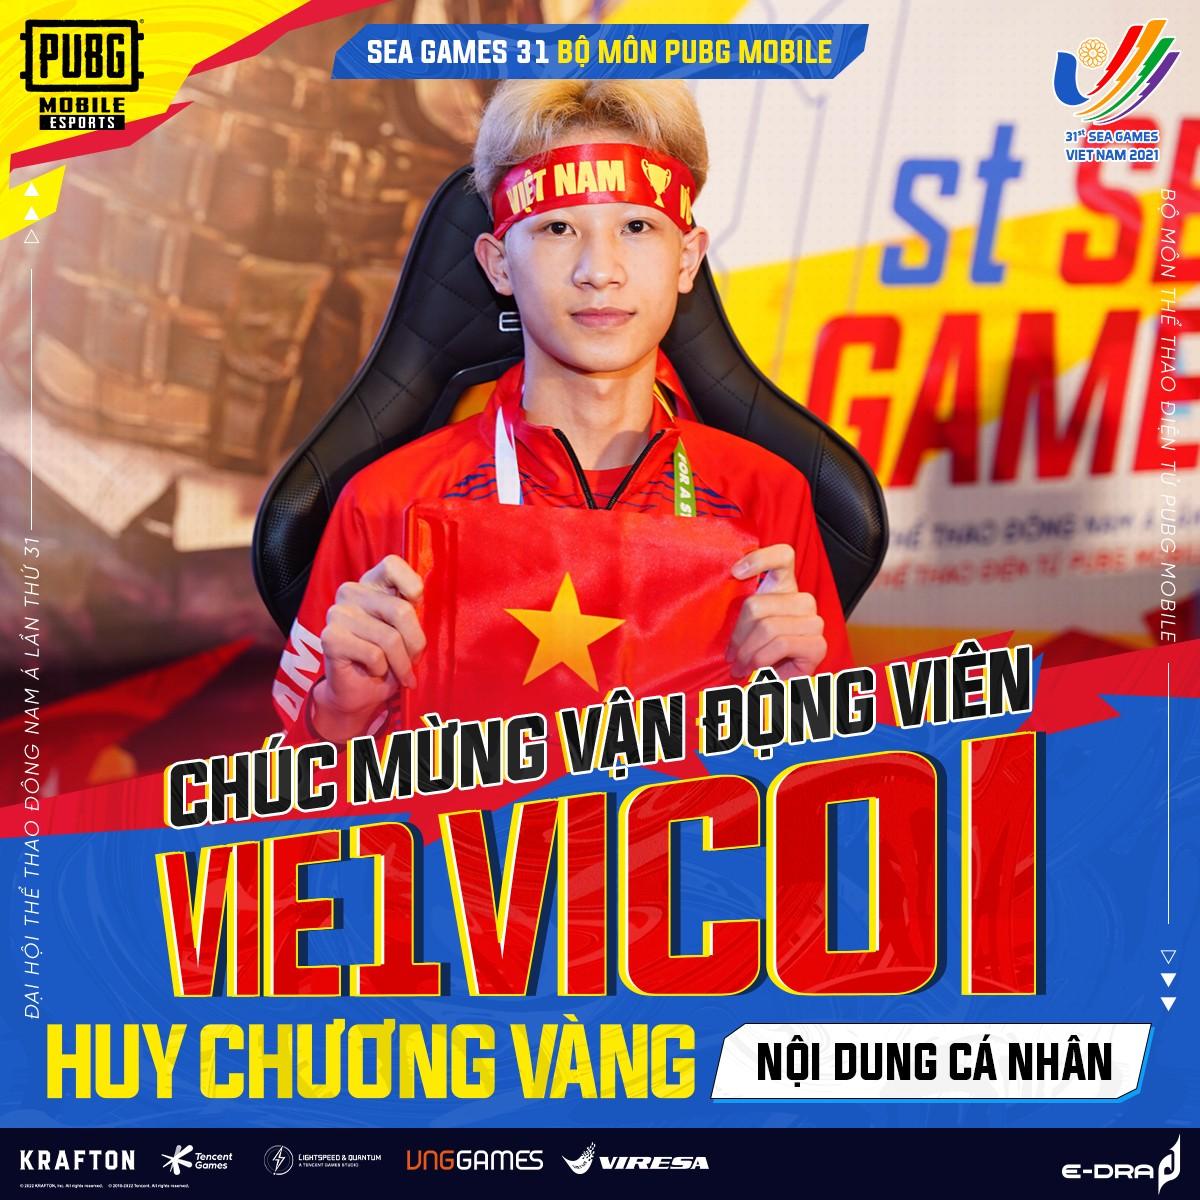 Vận động viên HCV eSports Việt Nam nhận cơn mưa bằng khen, cộng đồng réo tên Liên Quân Mobile và Free Fire